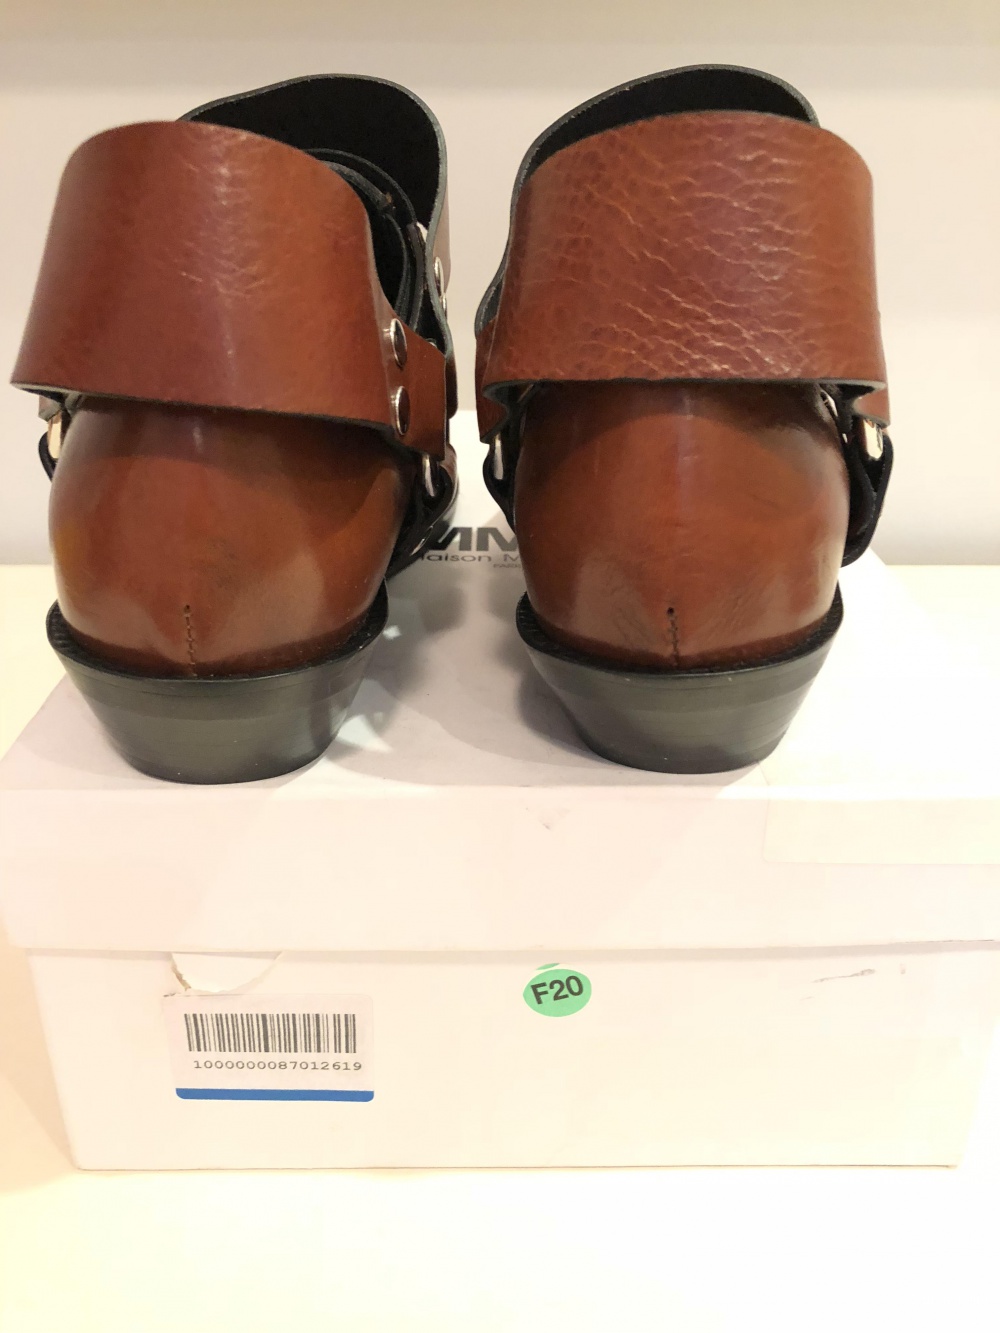 Ботинки MM6 Maison Margiela, 39 размер